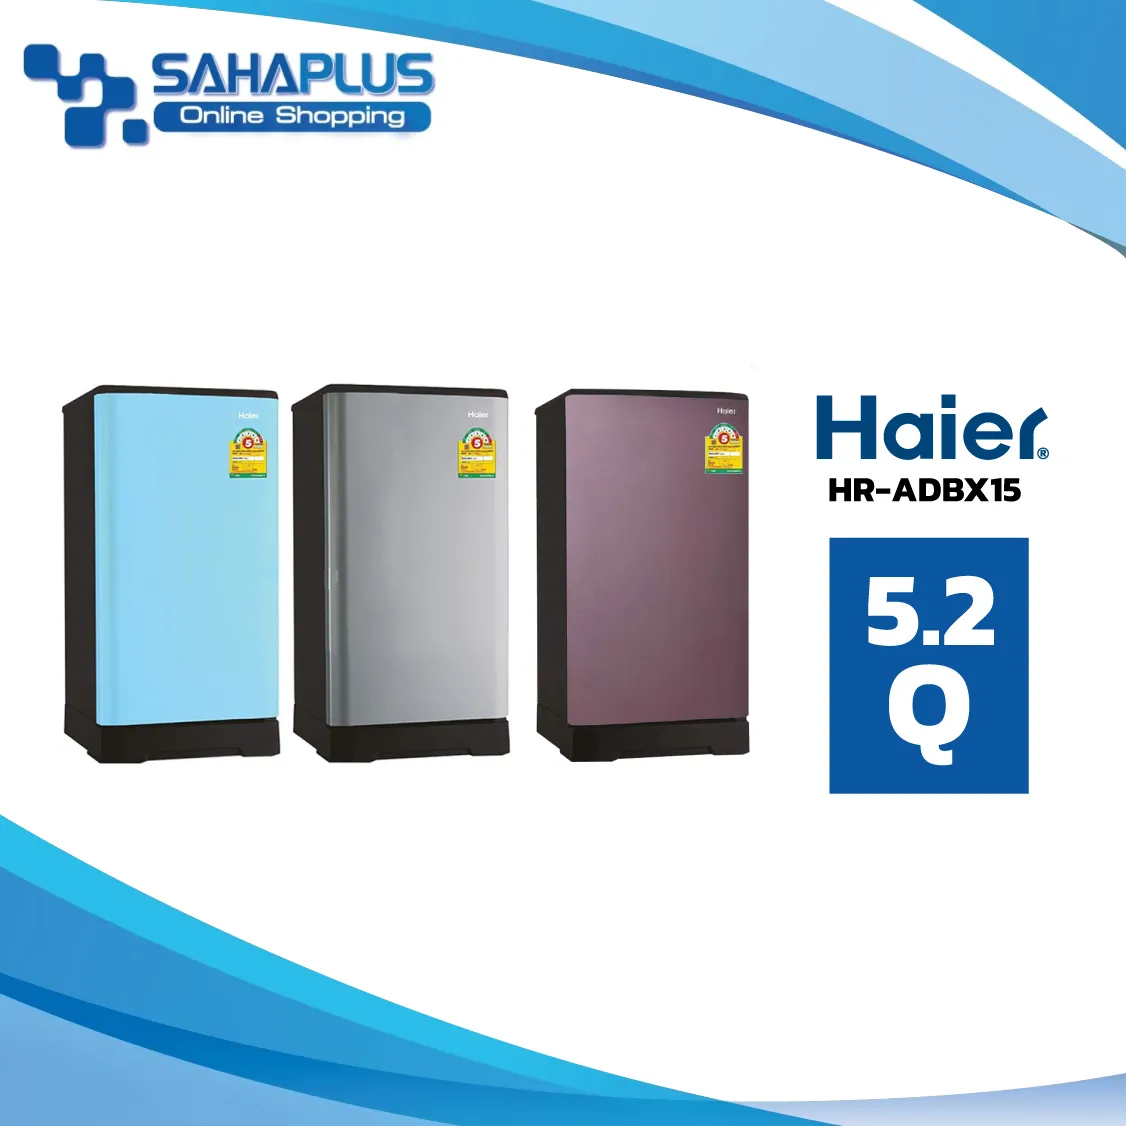 ตู้เย็น 1 ประตู Haier รุ่น HR-ADBX15 ขนาด 5.2Q มีสองสี ( รับประกันคอมเพรสเซอร์ 5 ปี )